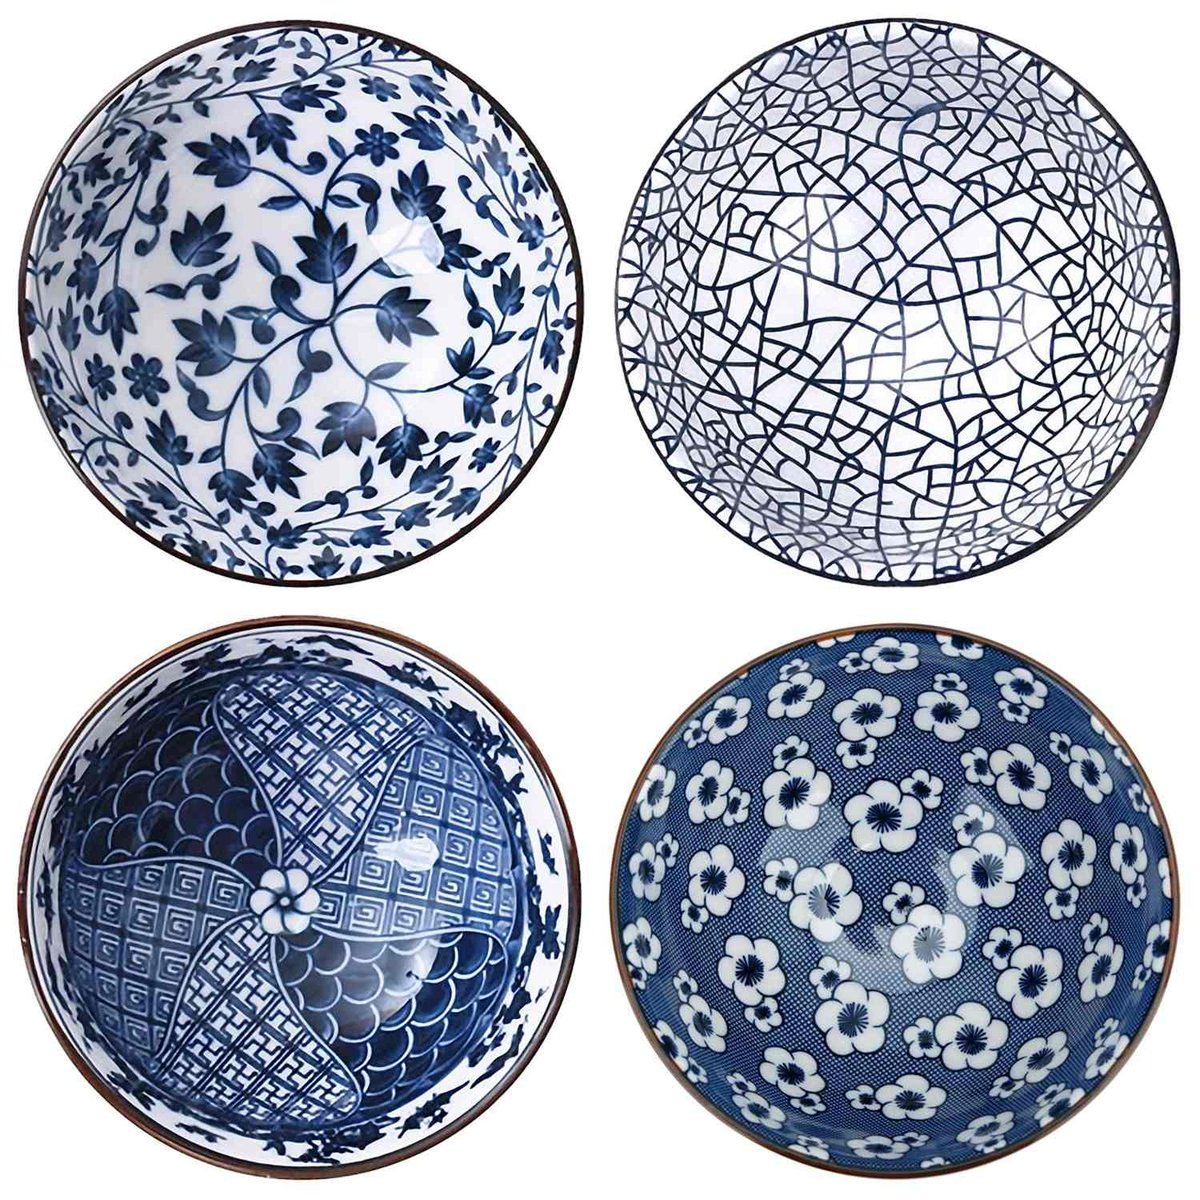 4-częściowy zestaw misek w eleganckim pudełku prezentowym - japońska porcelana stołowa w kolorze niebieskim i białym